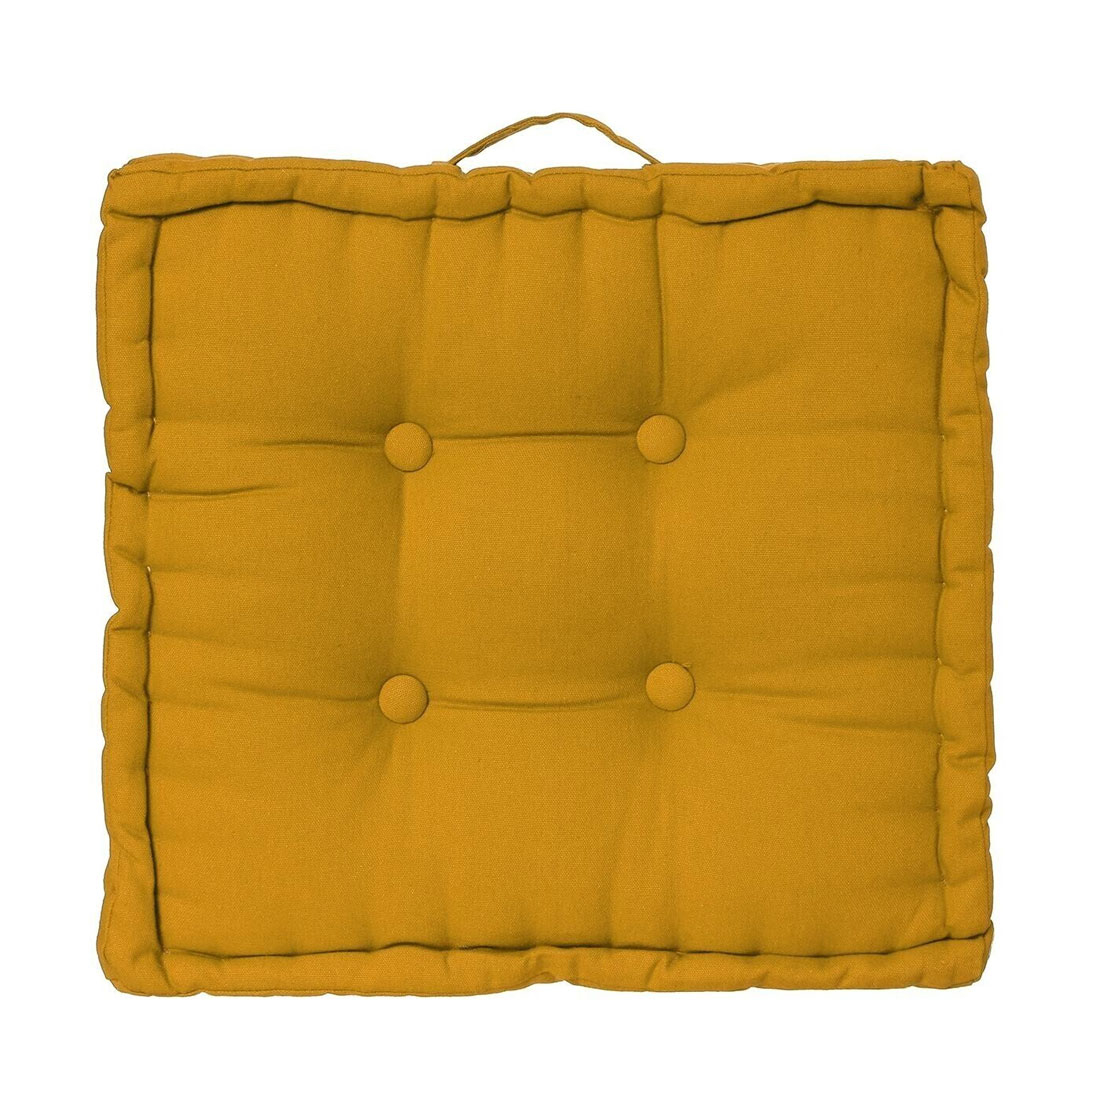 Μαξιλάρα Δαπέδου (40x40x8) A-S Floor Cushion Yellow 103852R 237533